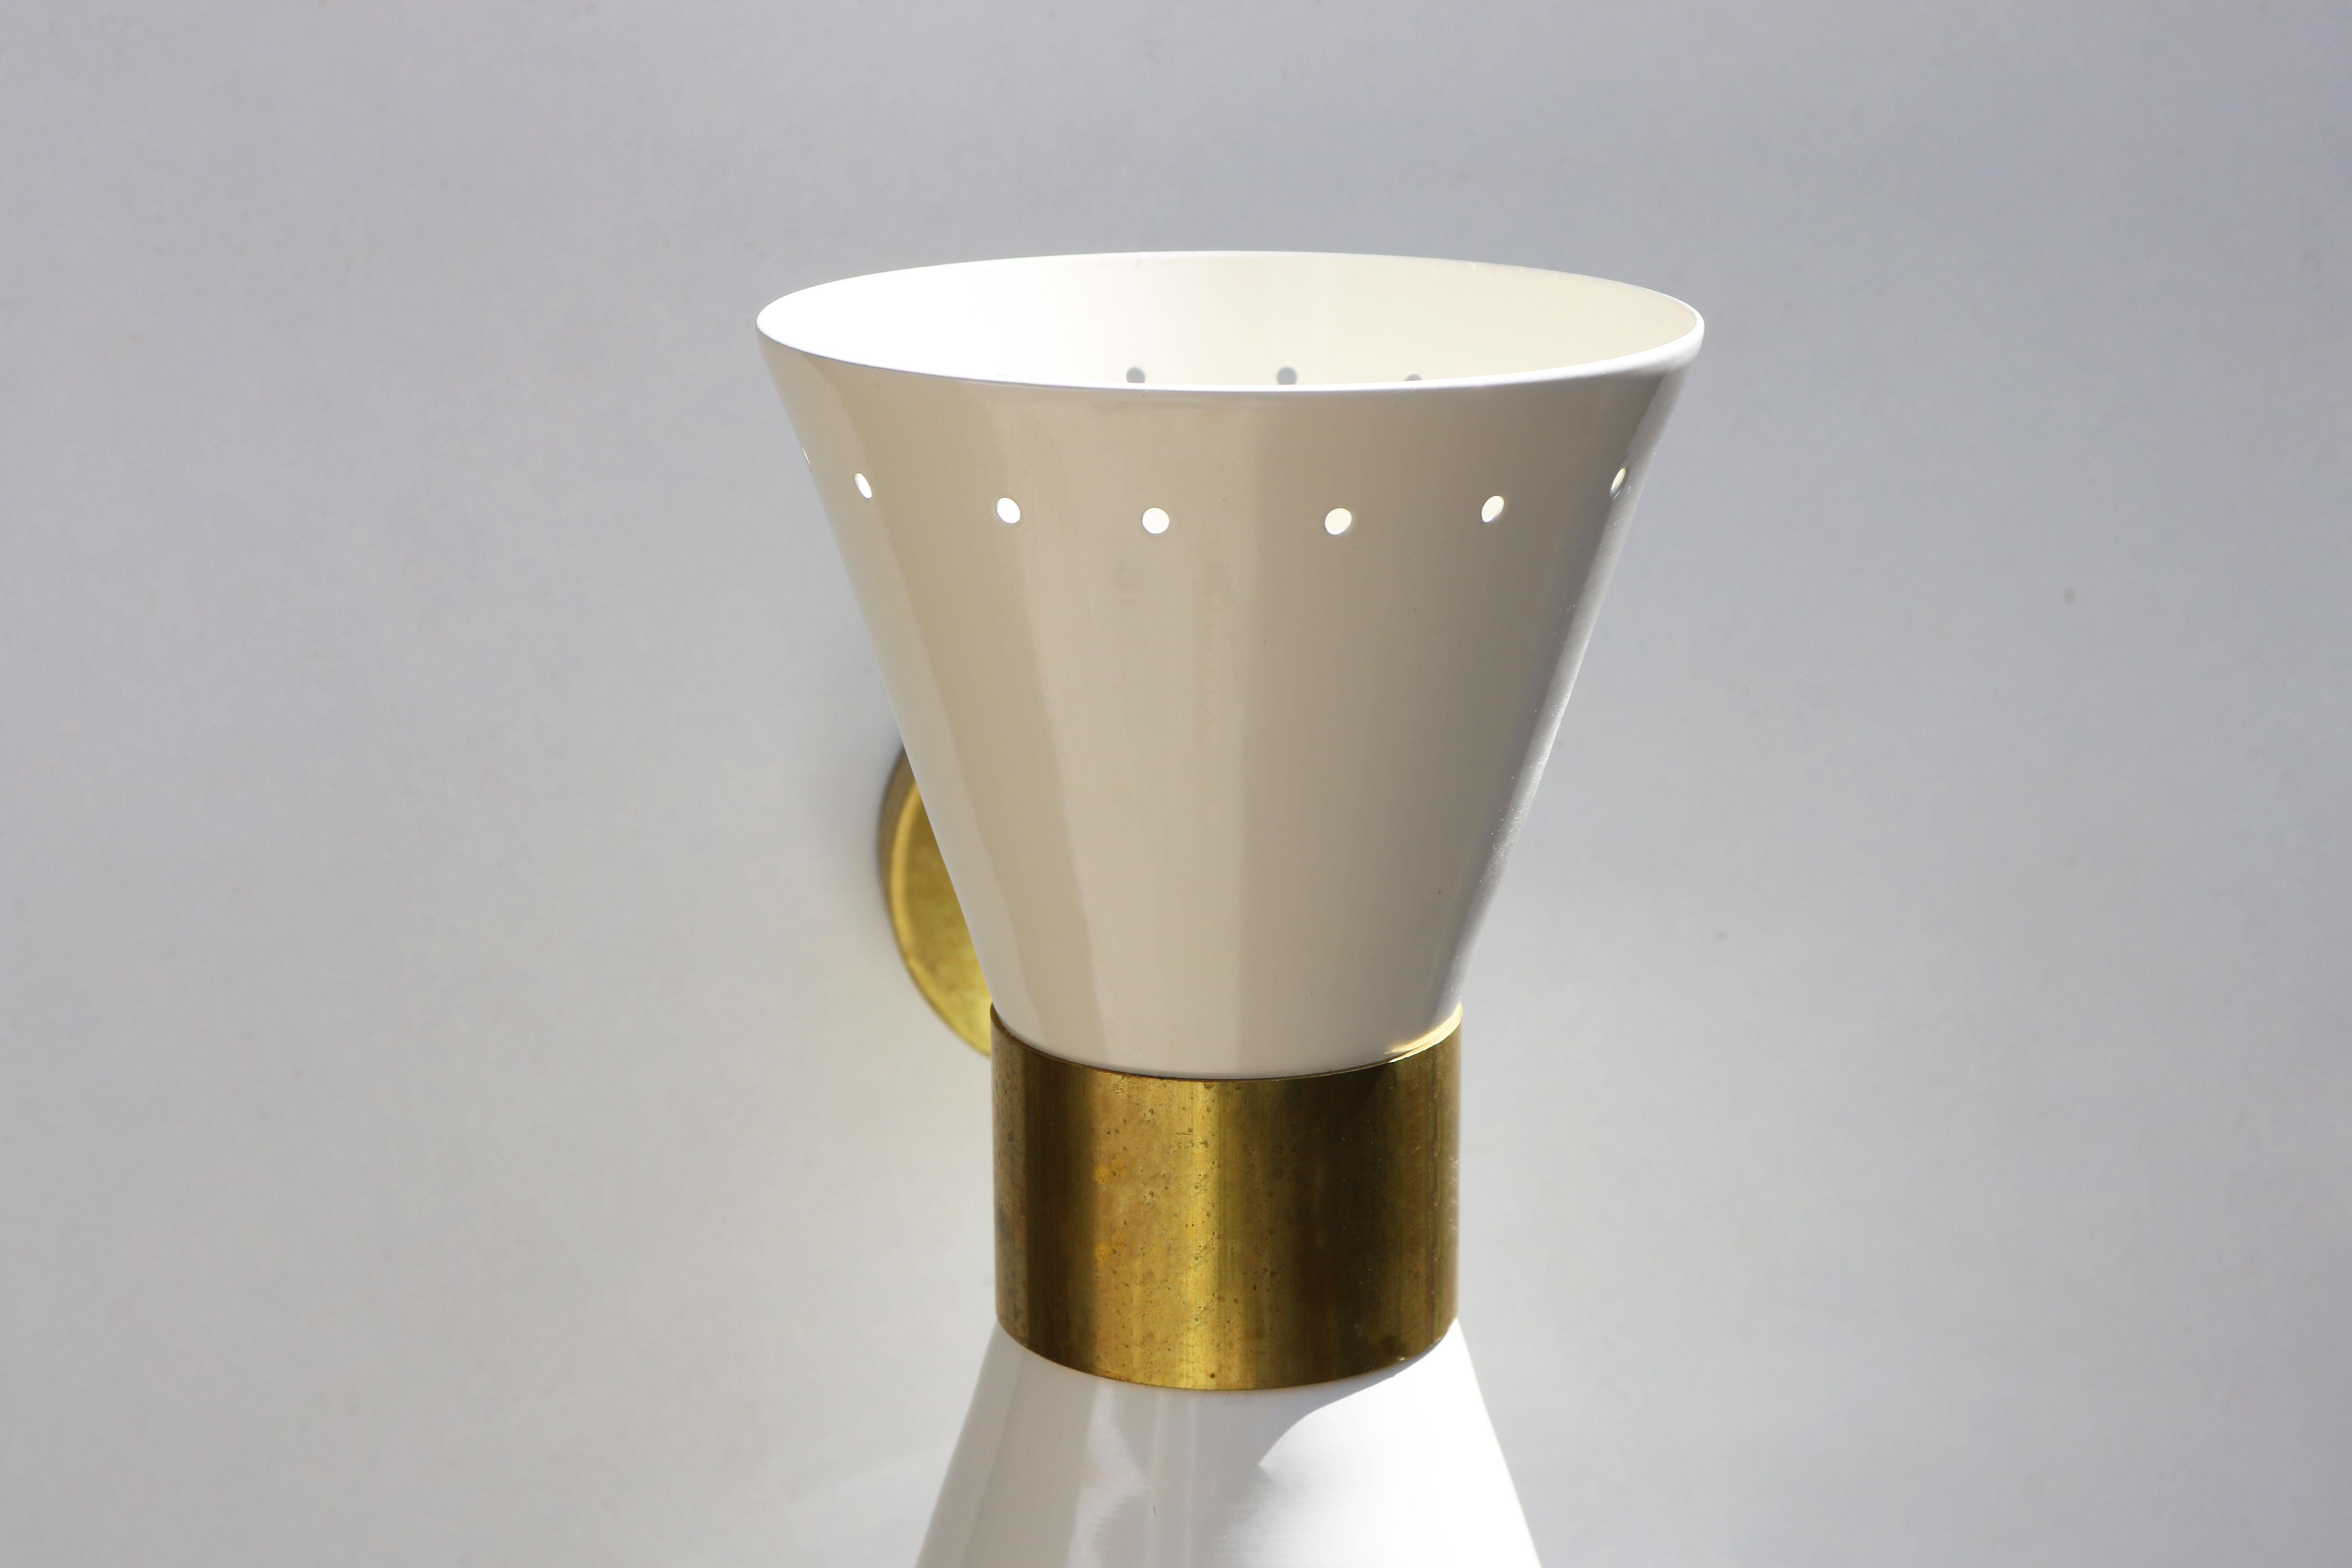 Metal 1 of 6 Italian Modern Design Wall Light Sconces Stilnovo Style Ivory White Brass